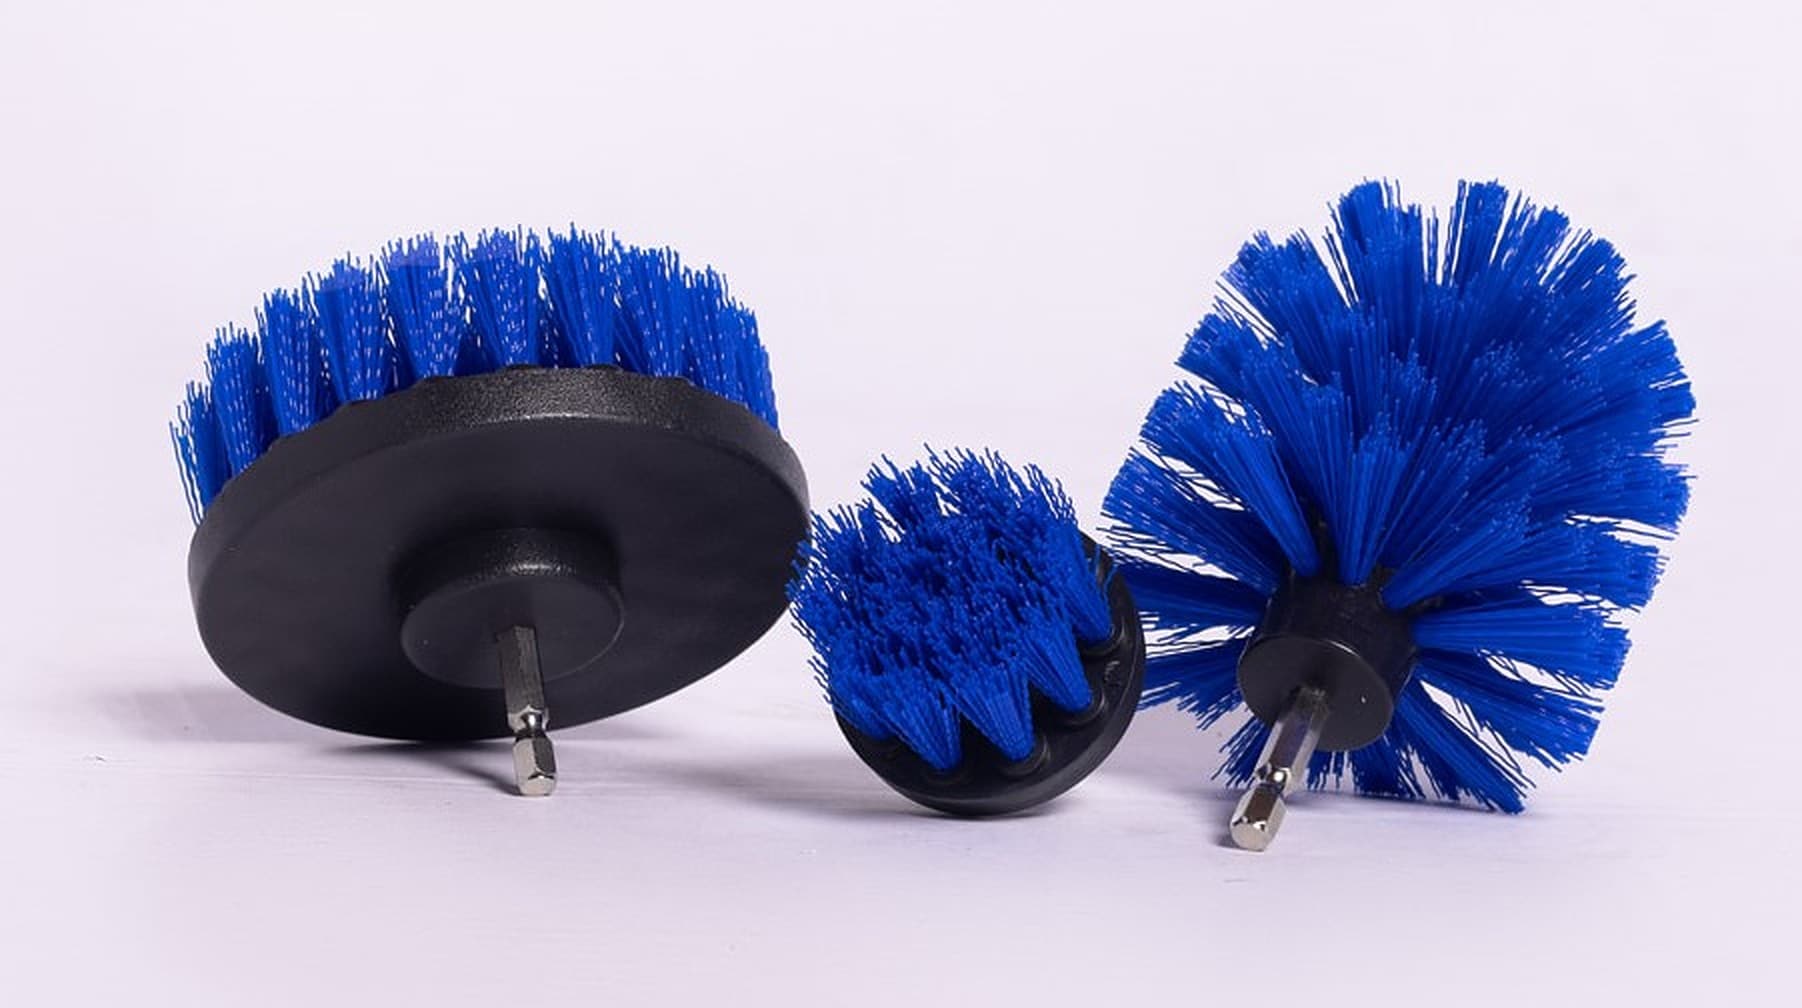 3PCS/Set Electric Scrubber Brush Drill Brush Kit Plastic Round